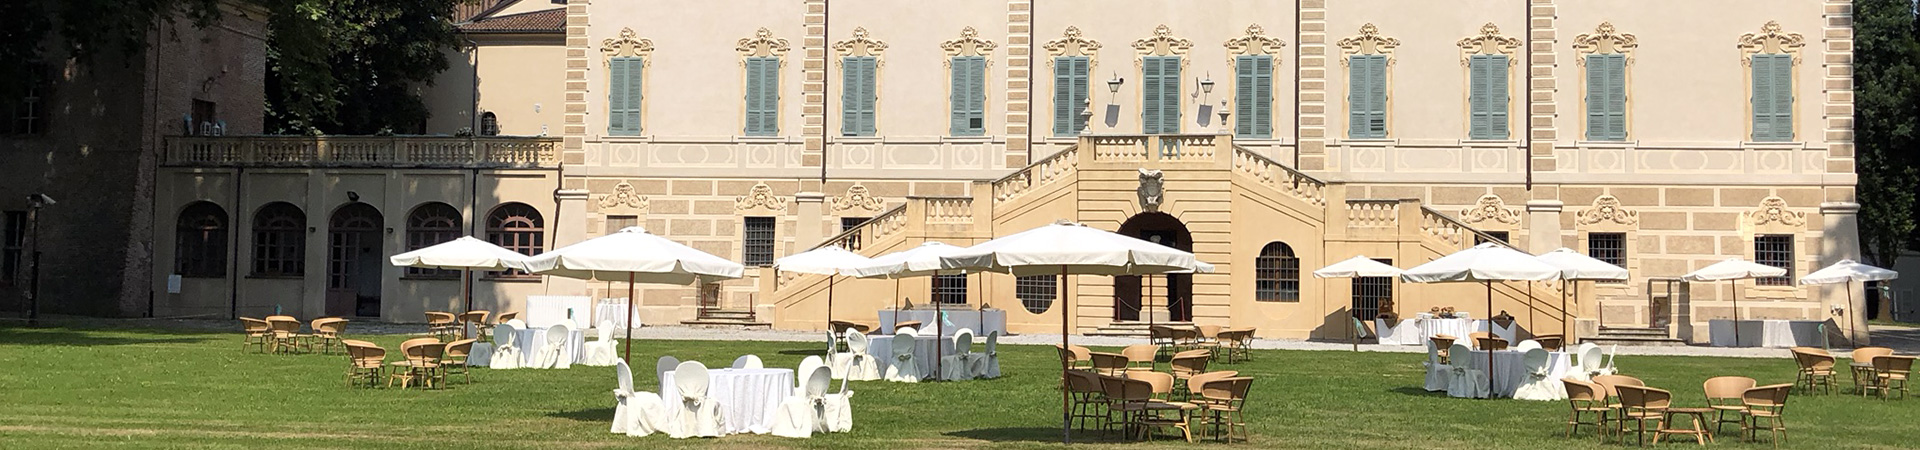 Castello Cavour - Santena - Location matrimoni Il Briccone Torino